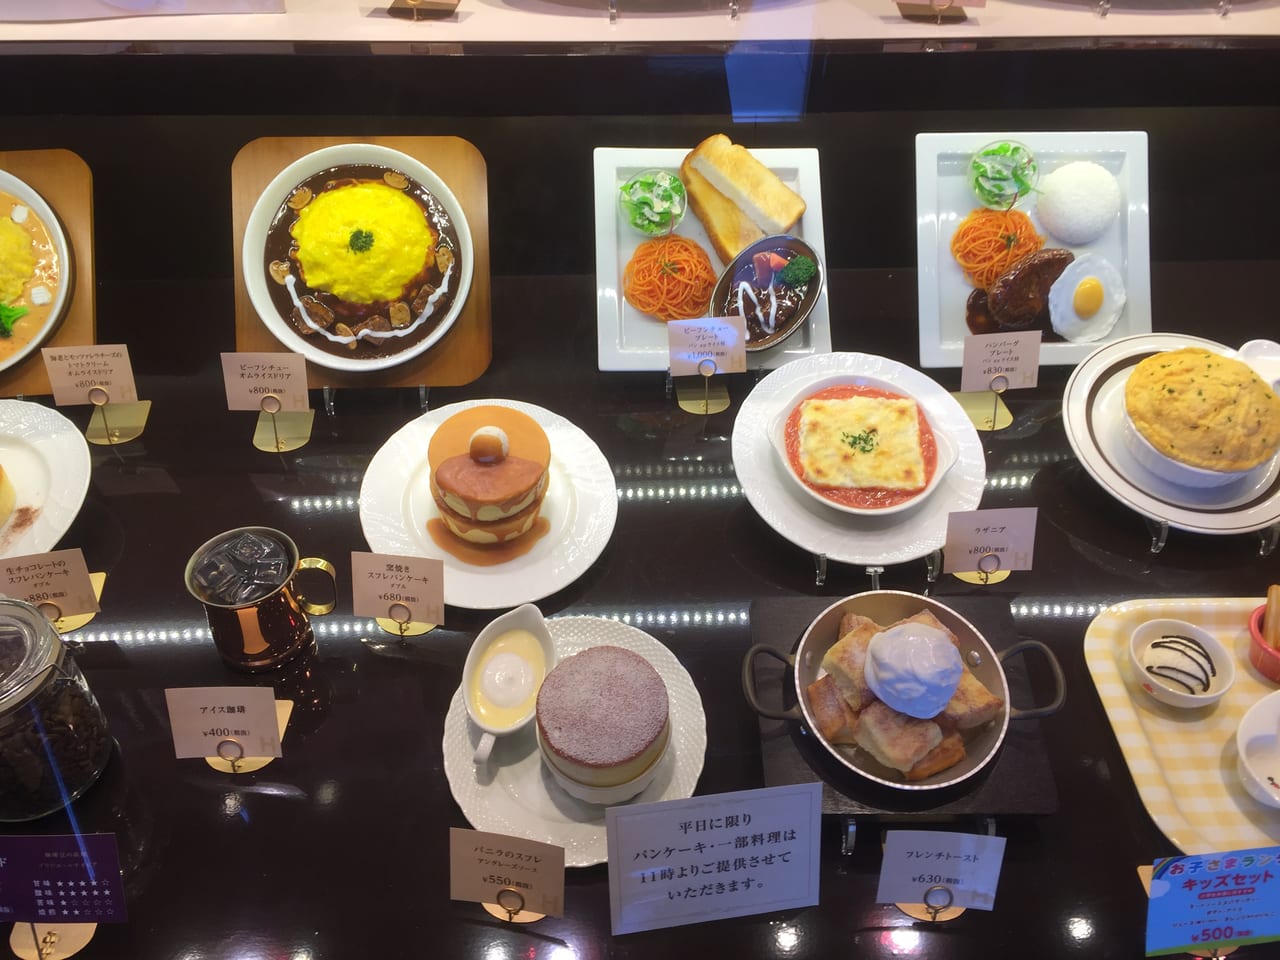 尼崎市 星乃珈琲店の人気メニューに 栗のスフレパンケーキ が追加 秋限定なのでお早めに 号外net 尼崎市